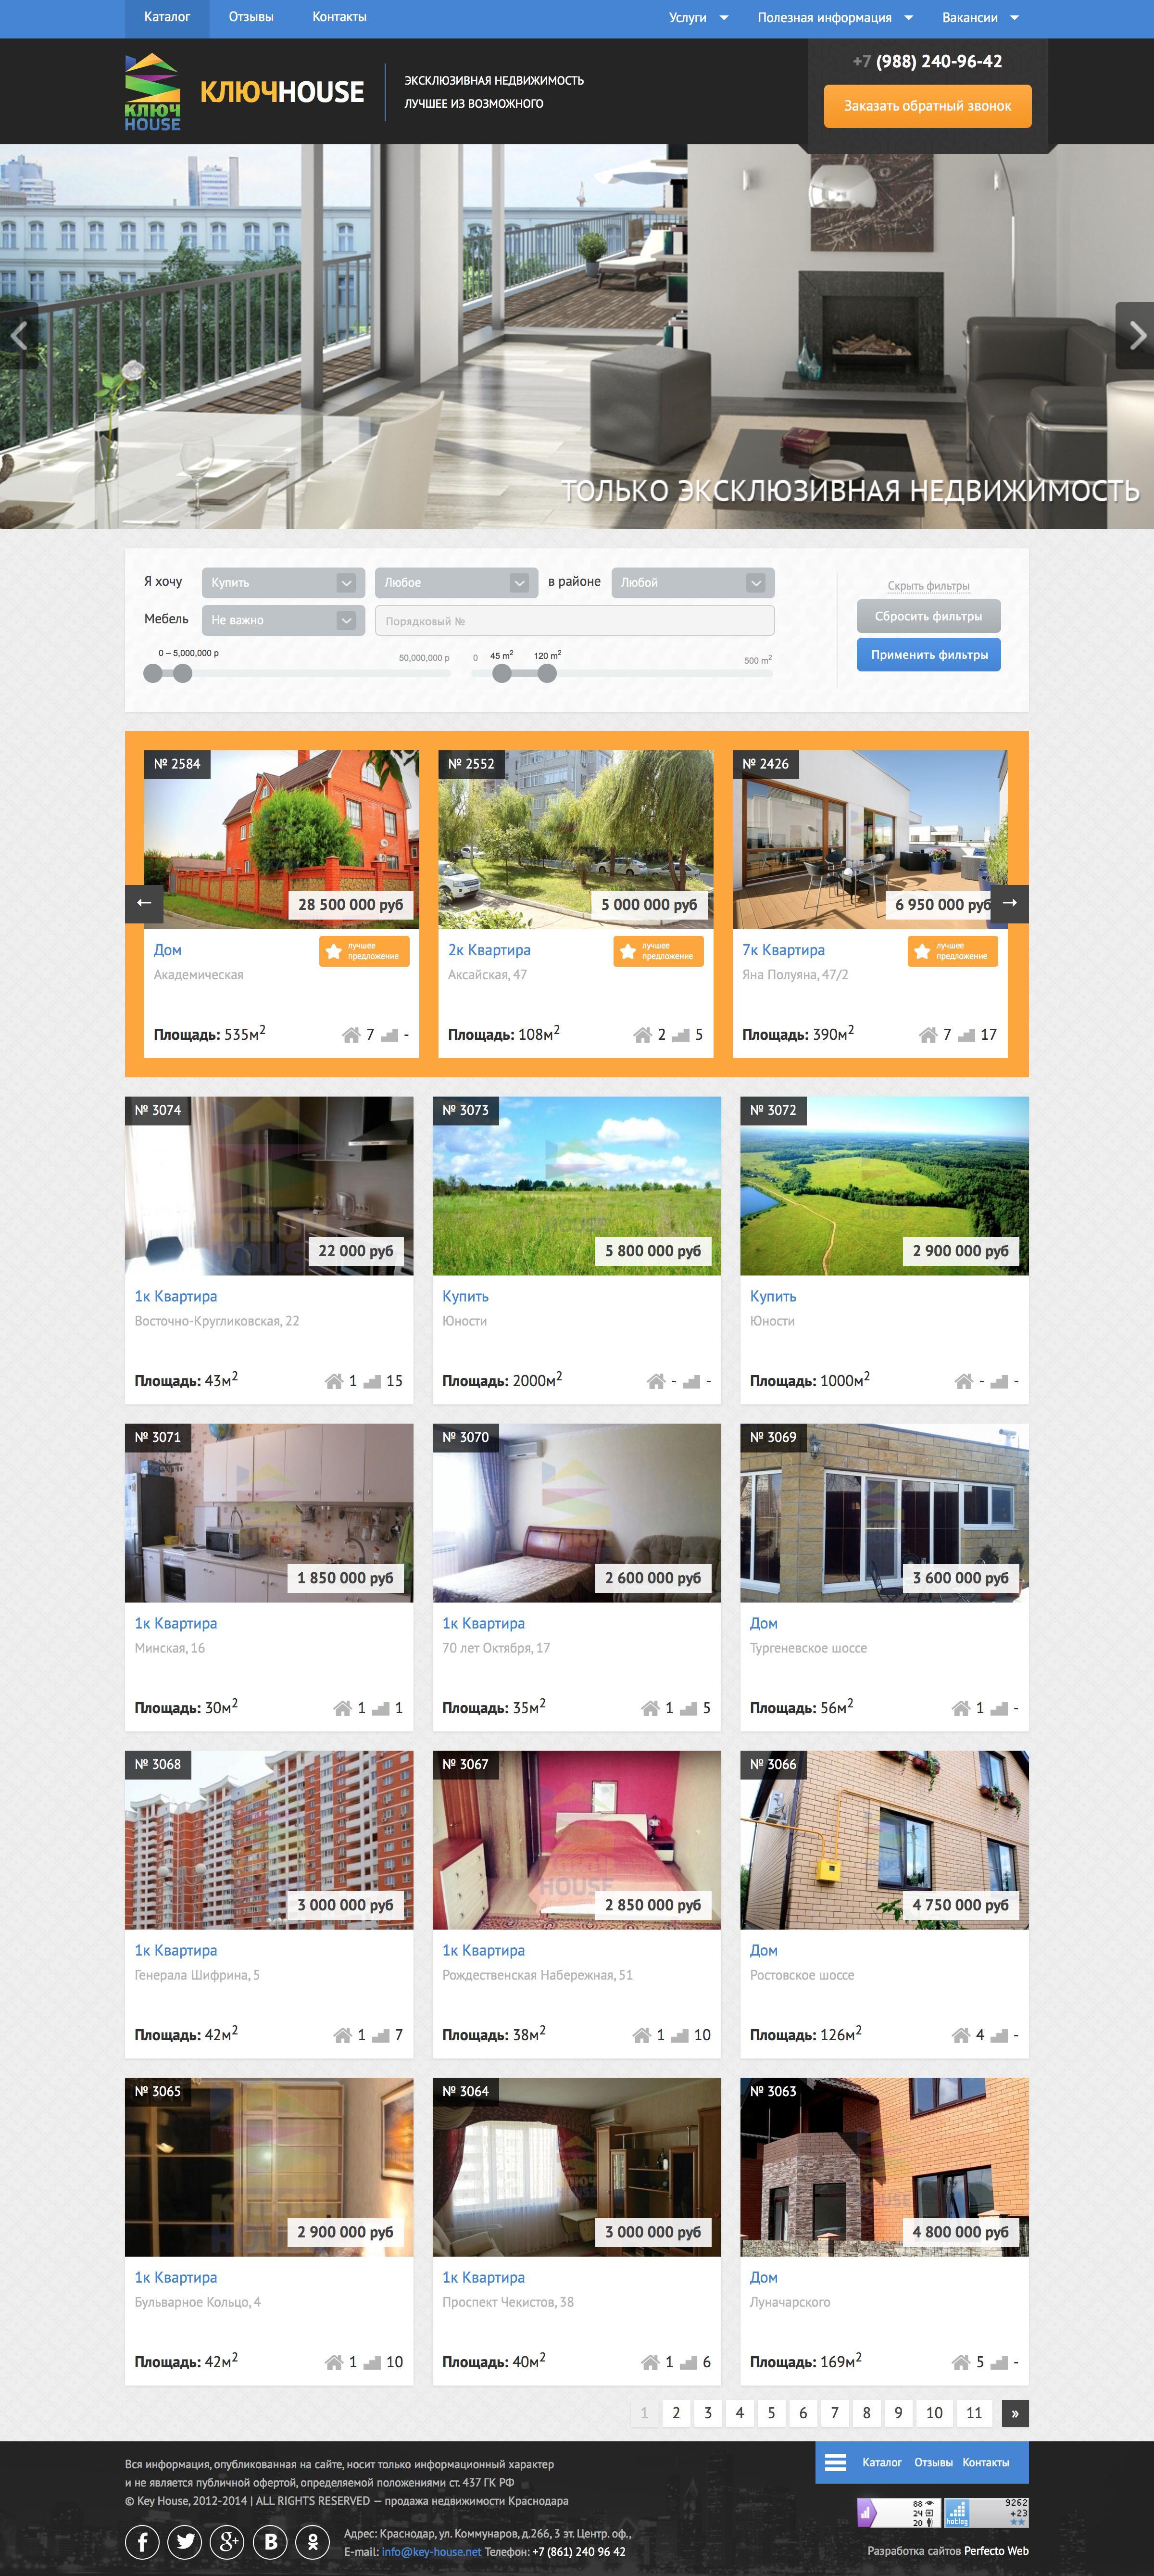 KeyHouse - Агенство недвижимости №1- Главная страница и каталог товаров